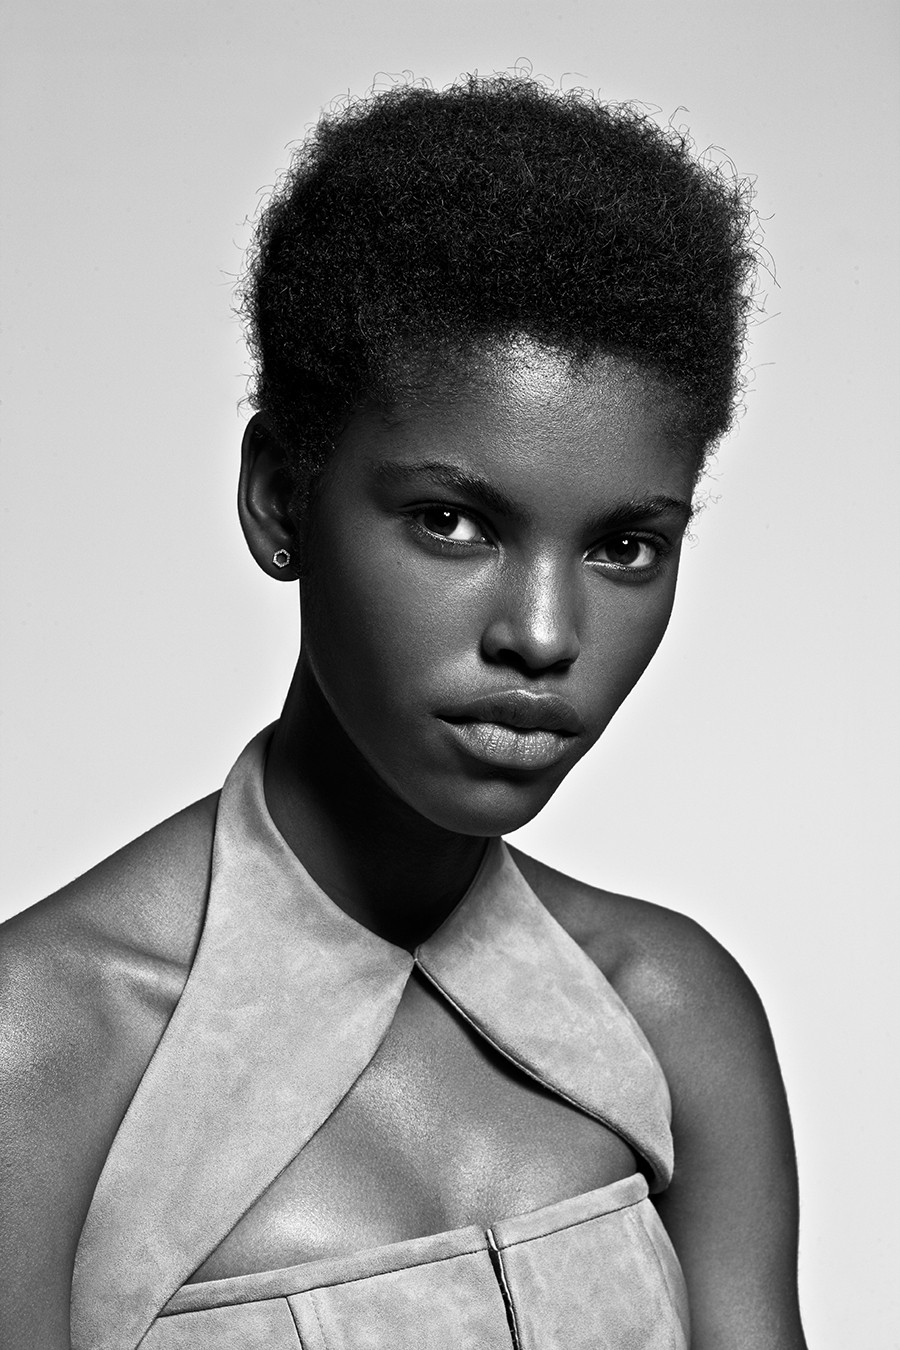 Meet Rising Angolan Model, Amilna Estevao - PAPER